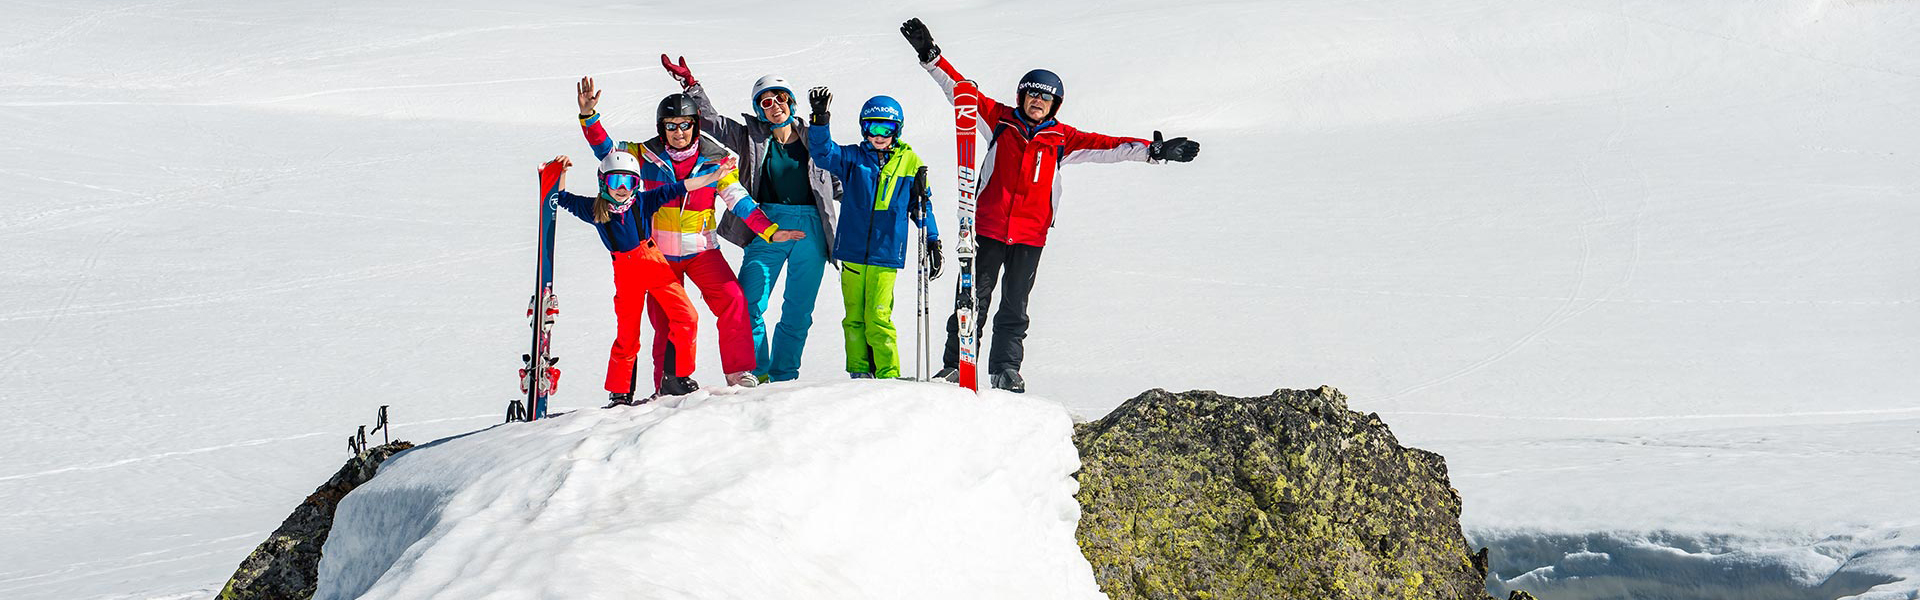 Chamrousse ski famille station ski montagne hiver grenoble lyon isère alpes france - © Images-et-reves.fr